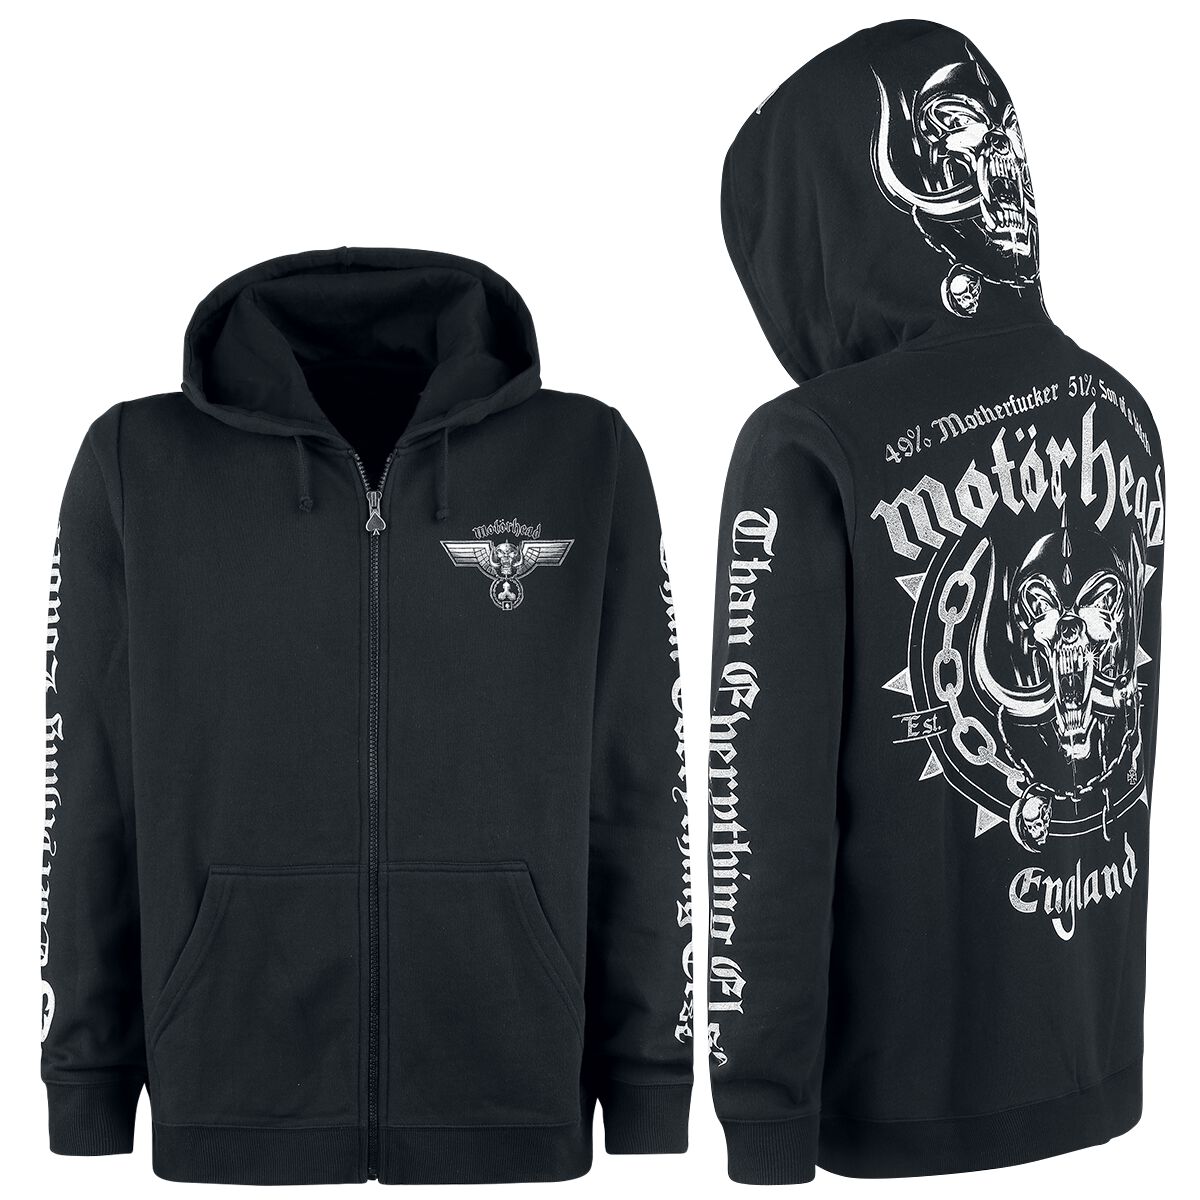 Motörhead Kapuzenjacke - England - M bis 3XL - für Männer - Größe 3XL - schwarz  - EMP exklusives Merchandise!